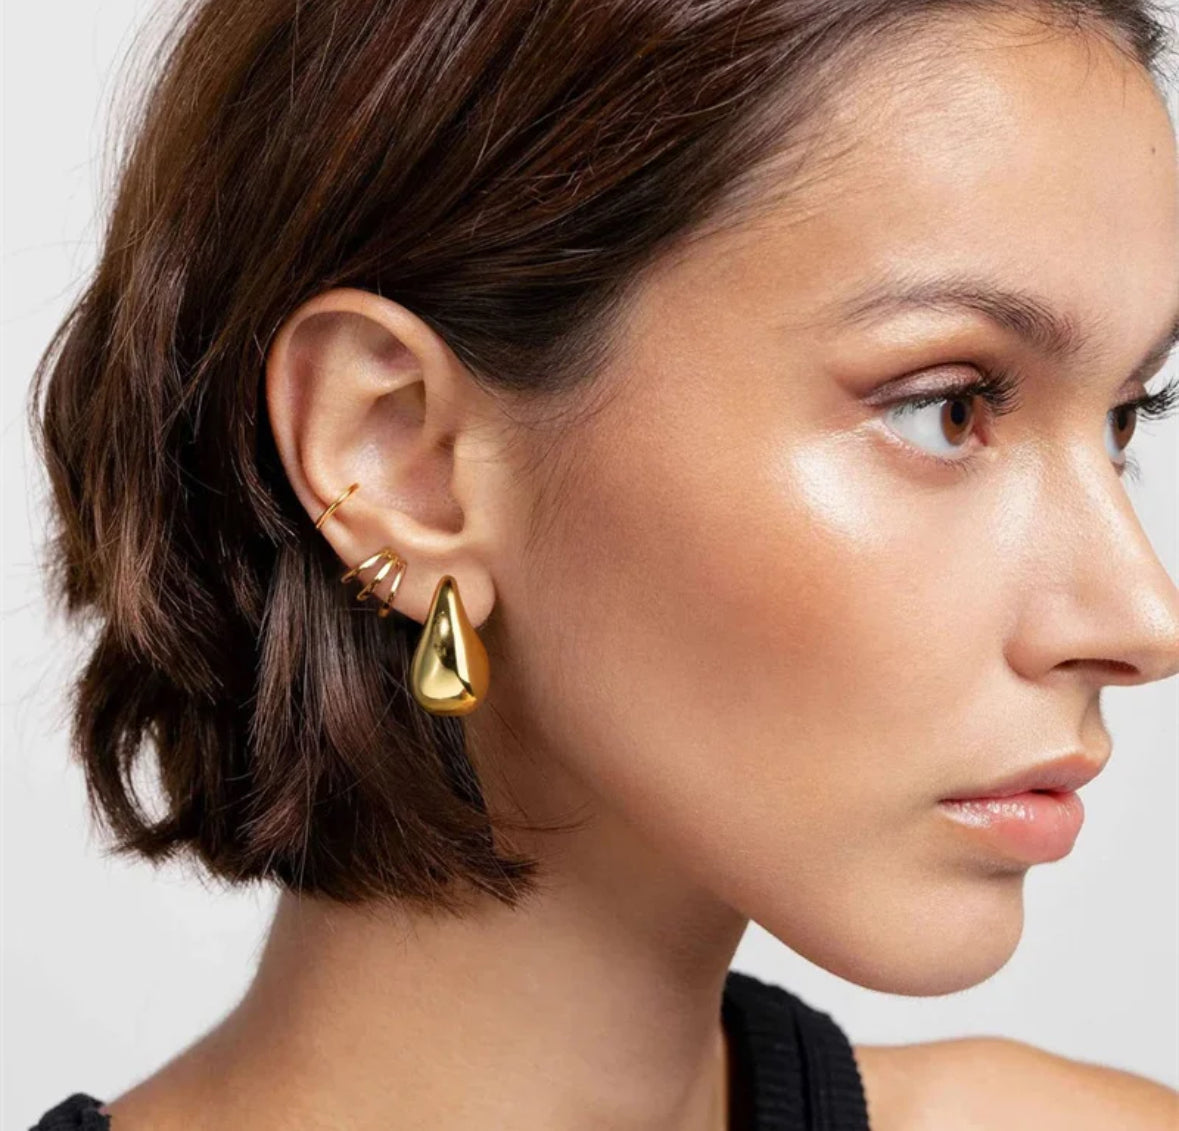 Teardrop Earrings Gold